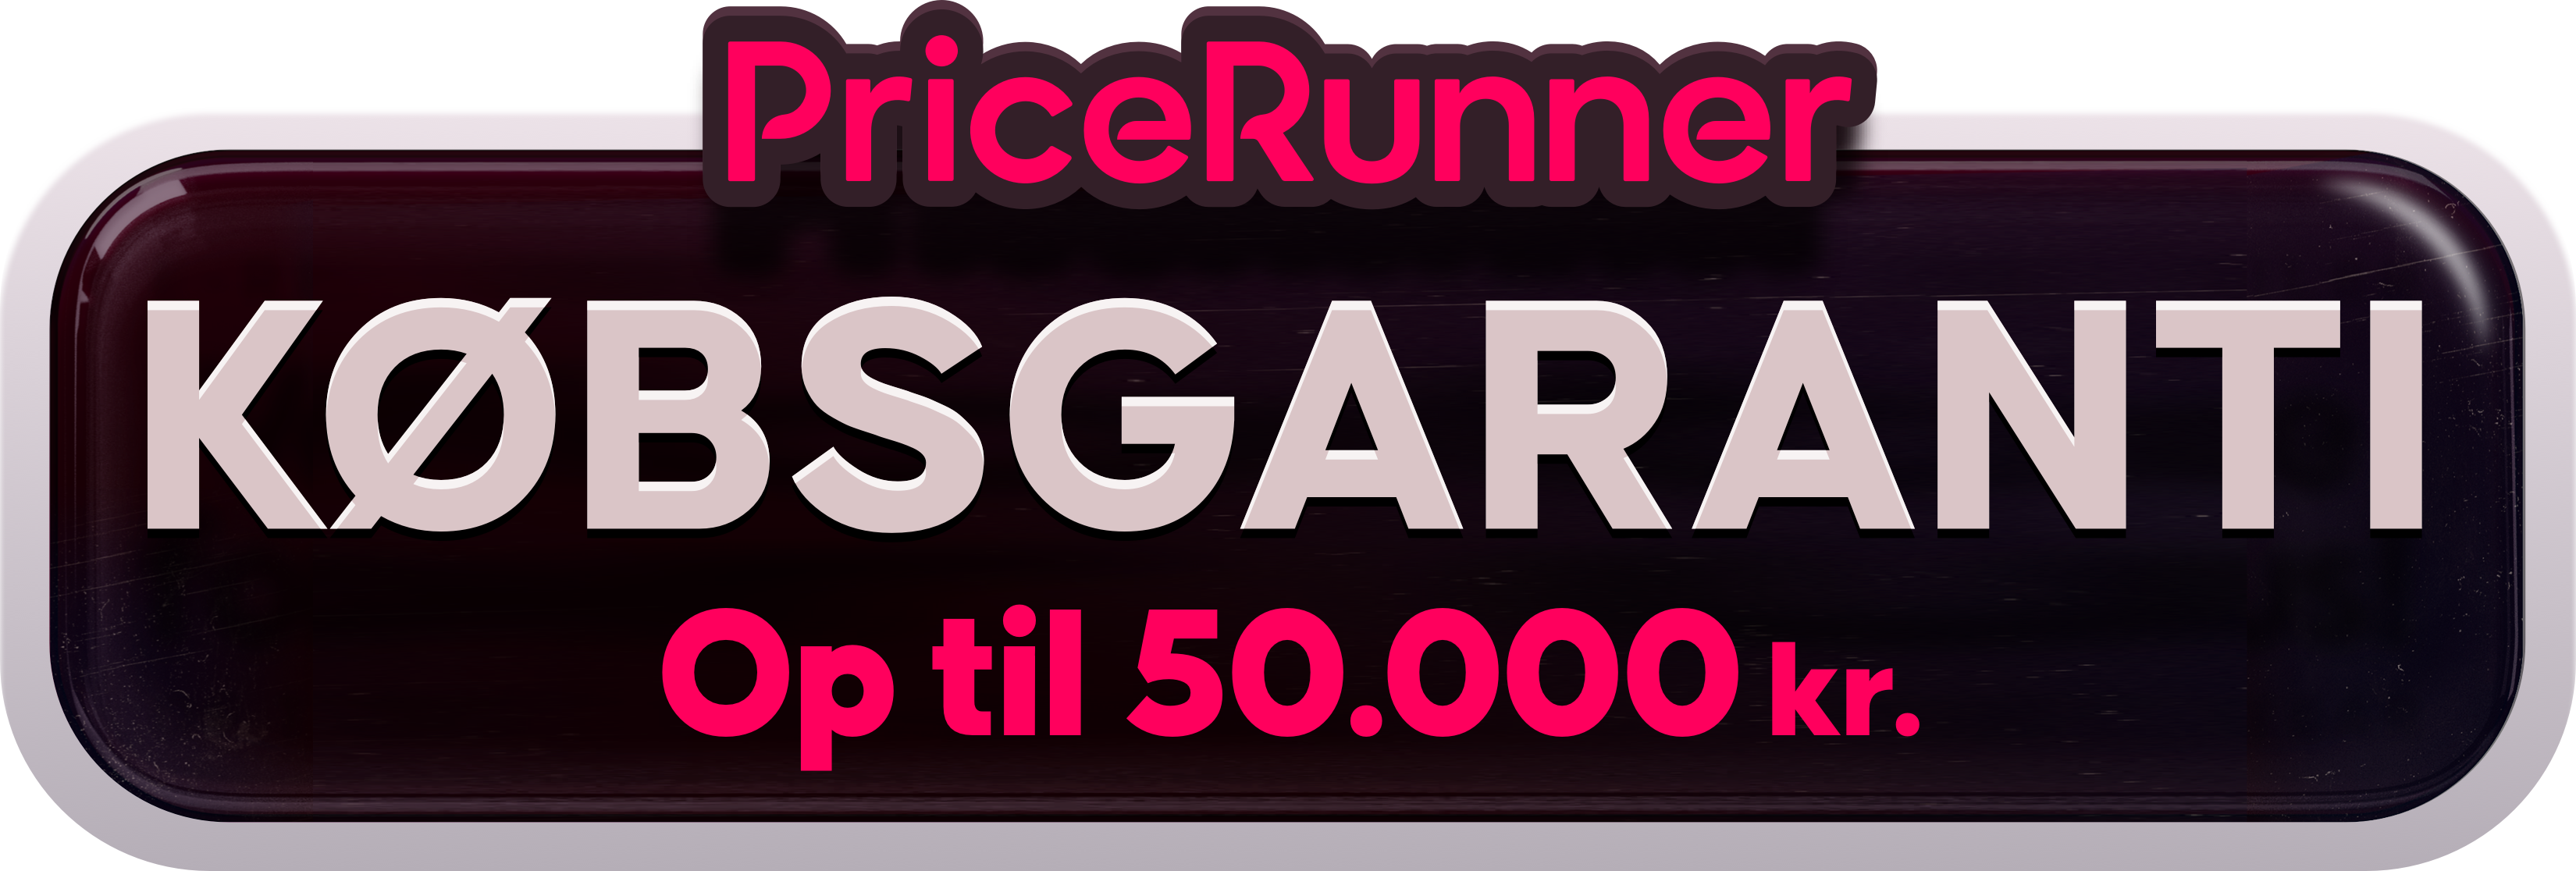 price runner garanti